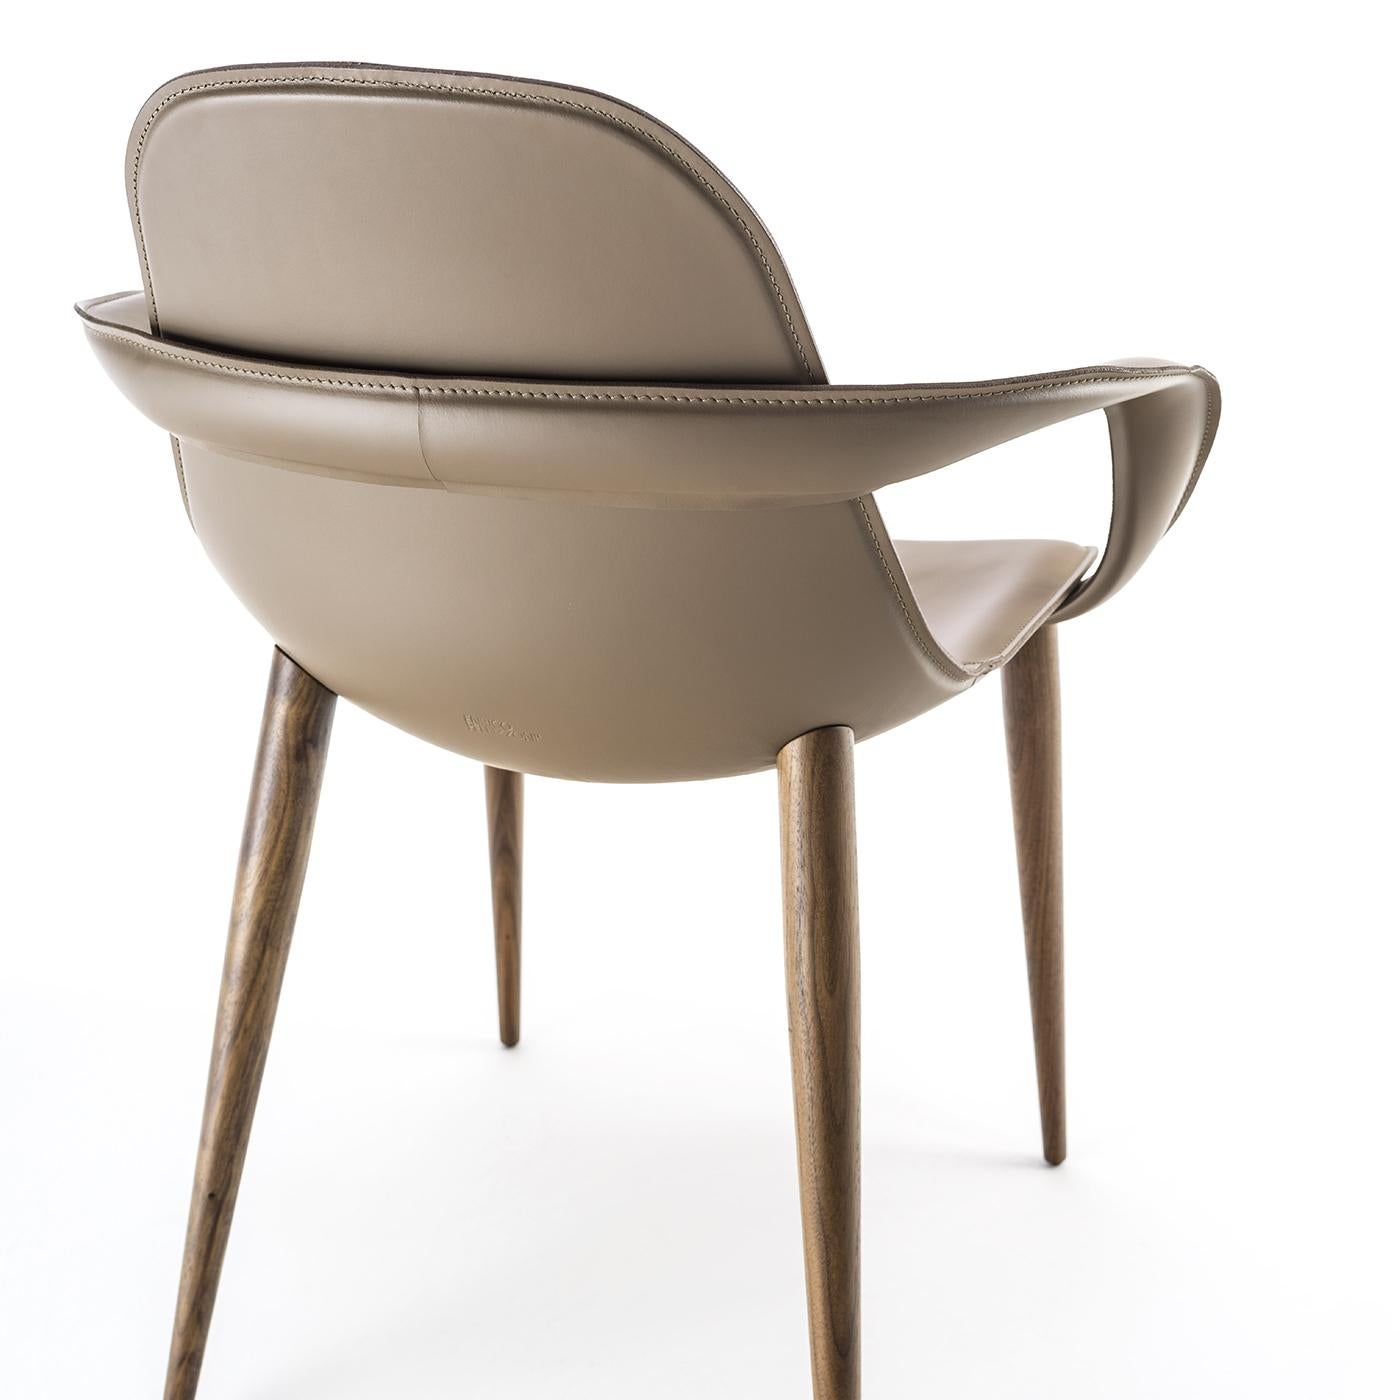 Dieser Stuhl wurde so entworfen, dass er sich perfekt in jeden Raum einfügt. Die Form des Sitzes hält die Rückenlehne hoch und sorgt für Komfort, während vier Beine aus Canaletto-Walnussholz die Struktur tragen. Die Schale ist aus Aluminium und mit